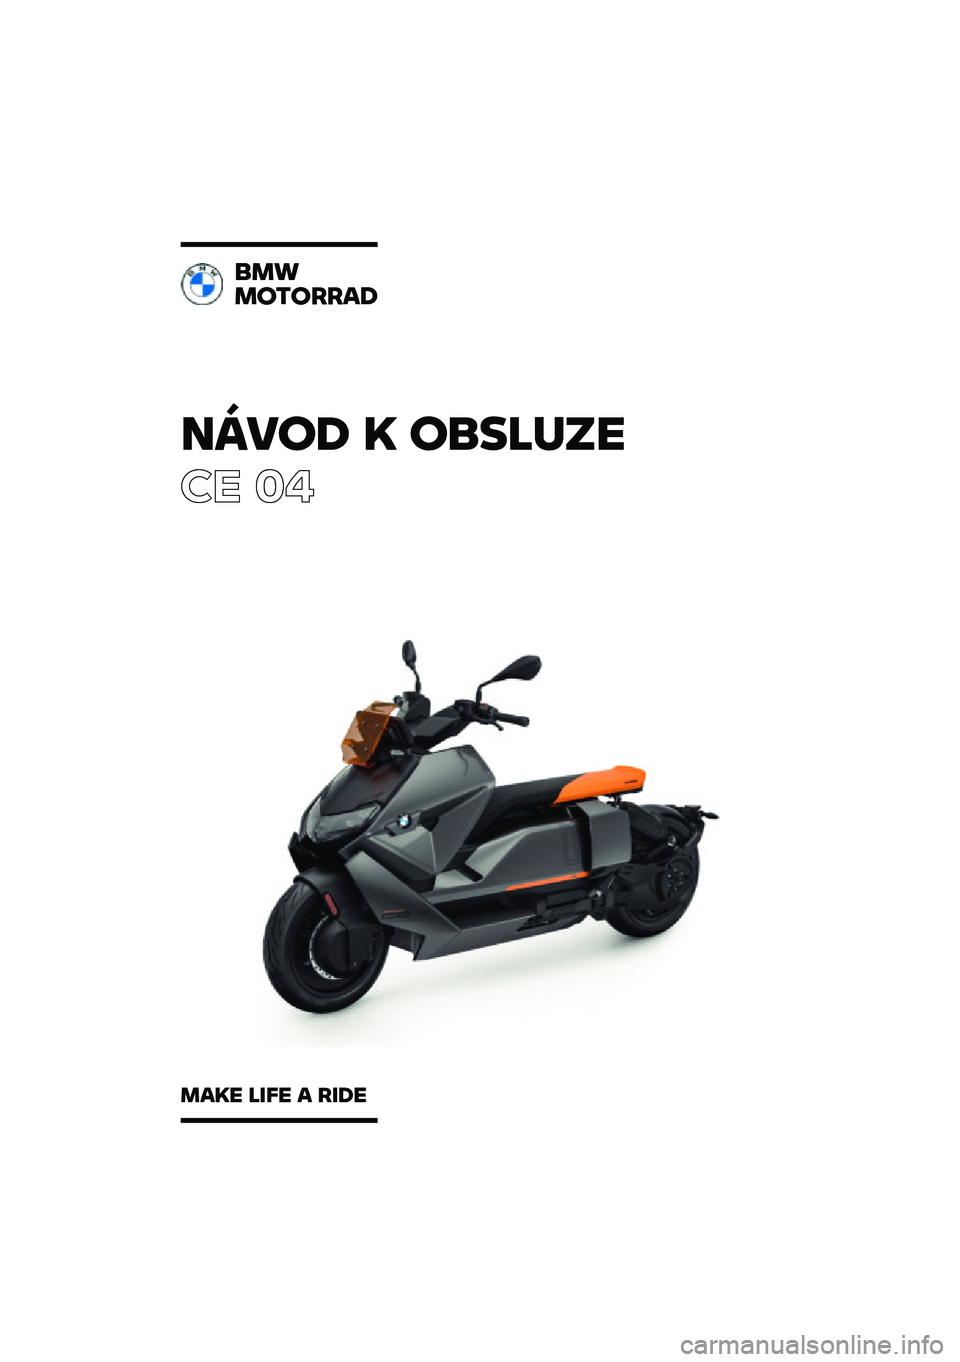 BMW MOTORRAD CE 04 2021  Návod k obsluze (in Czech) �����\b �	 ��
��\f�
��
�� ��
�
��
��������\b
���	� �\f��� � ���\b� 